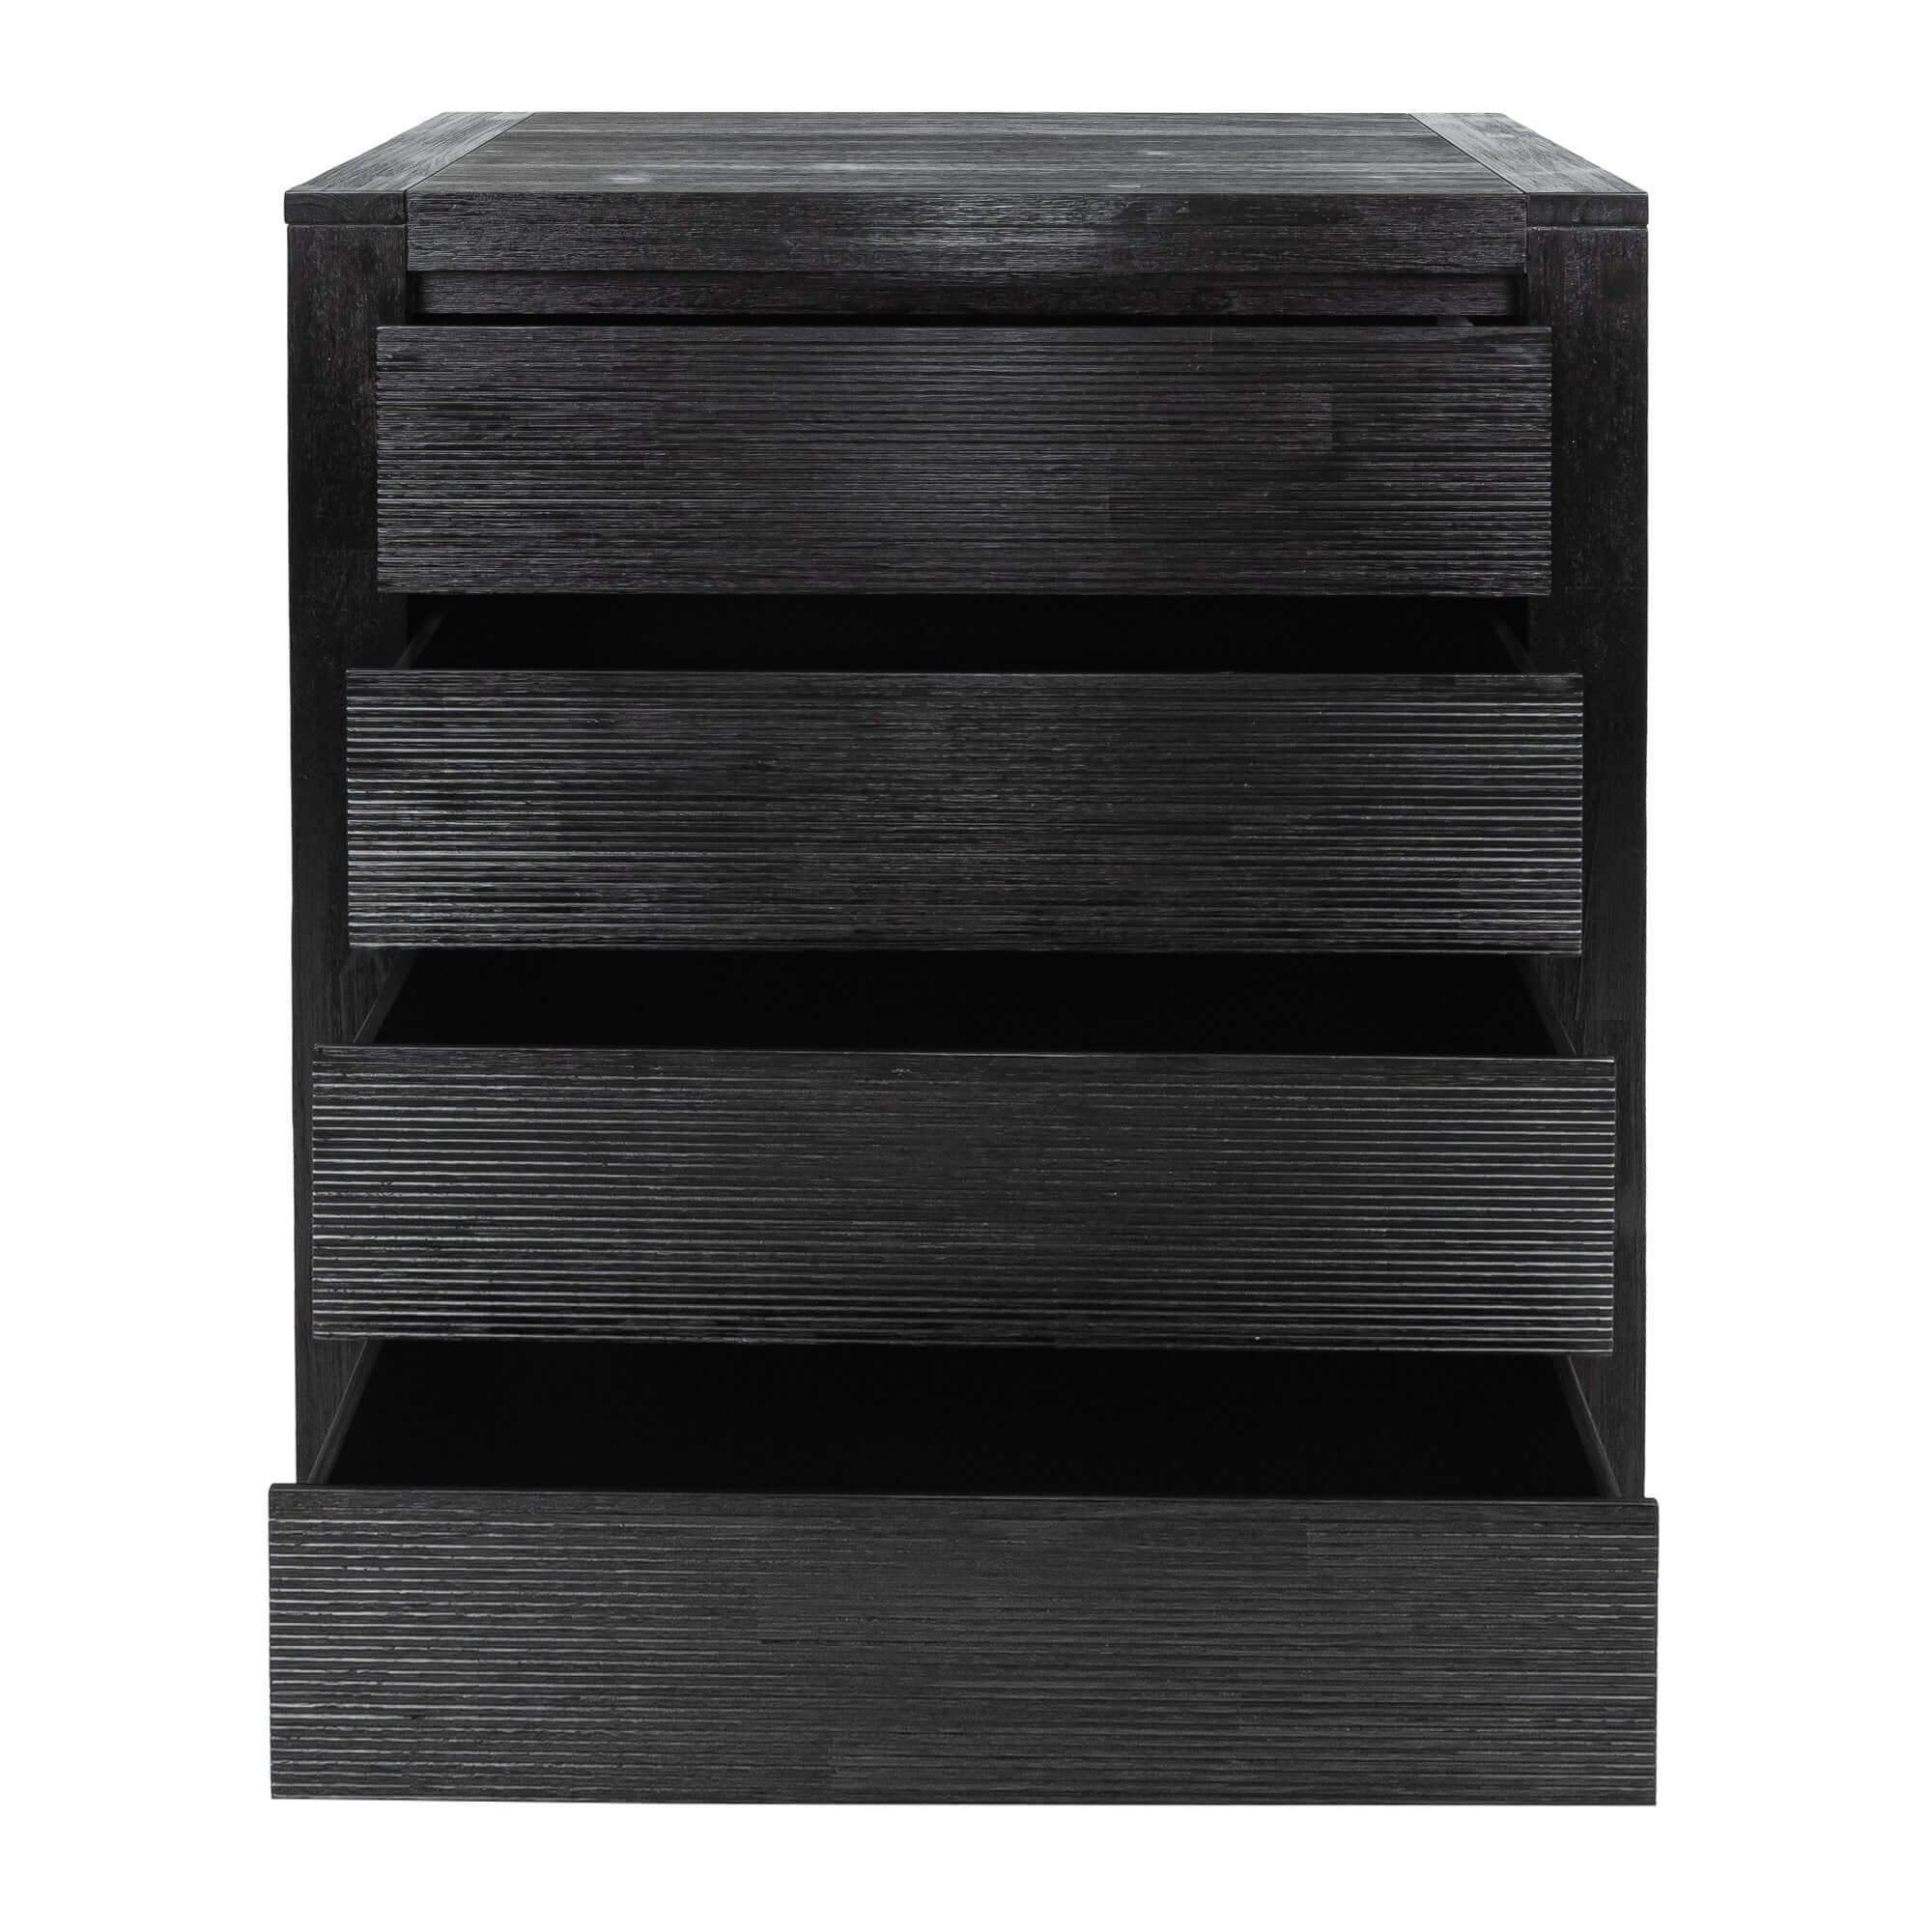 Tofino King Bedroom Suite 4pc - Elegant Black Furniture-Upinteriors